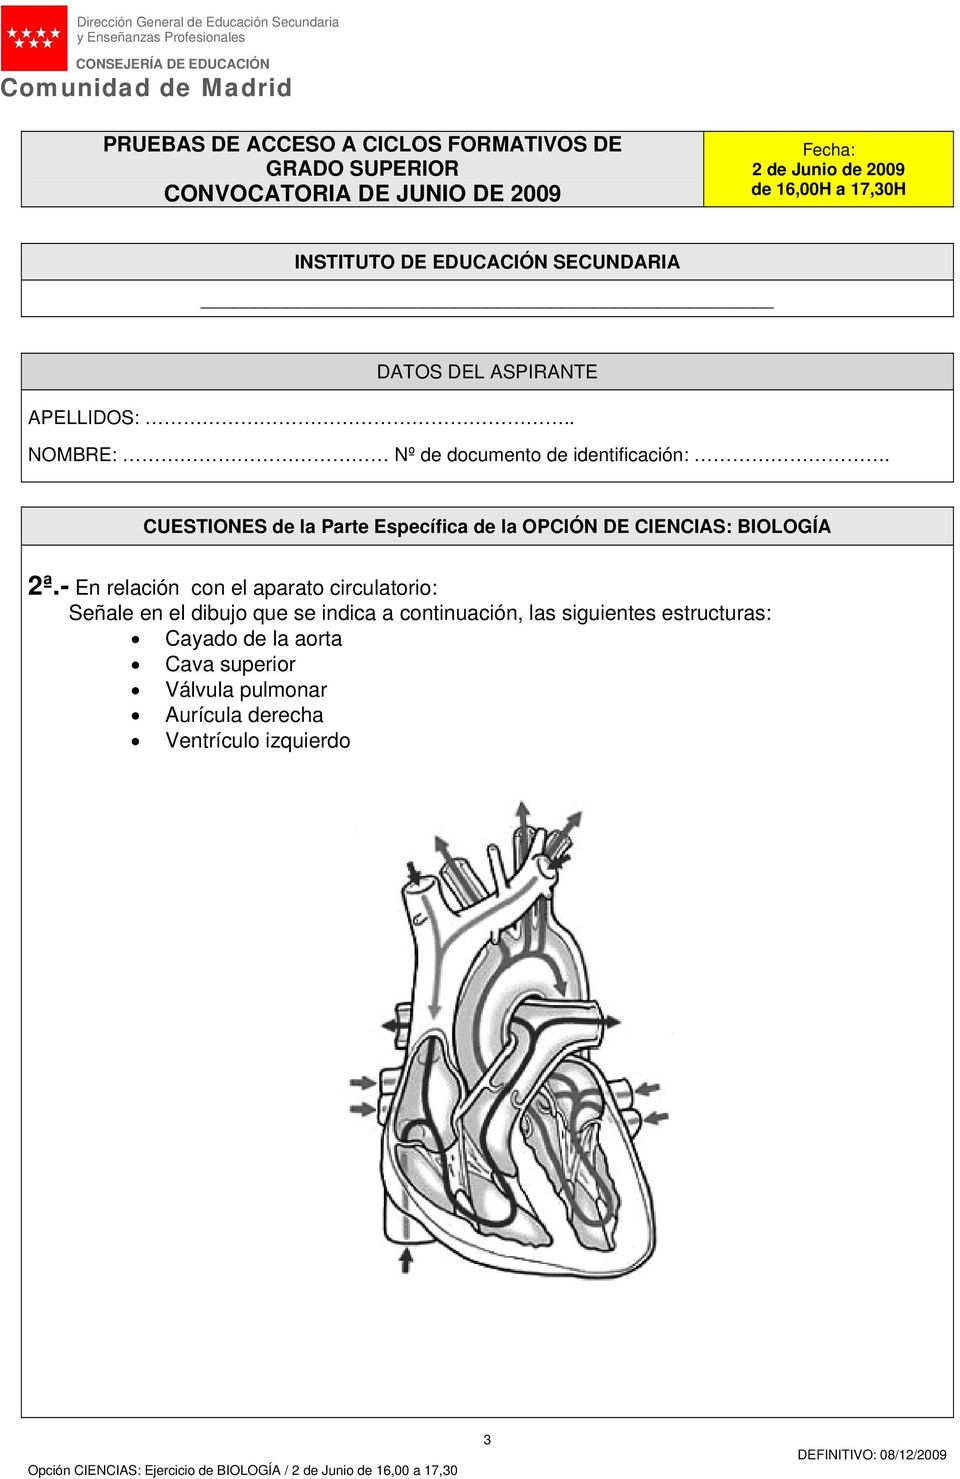 siguientes estructuras: Cayado de la aorta Cava